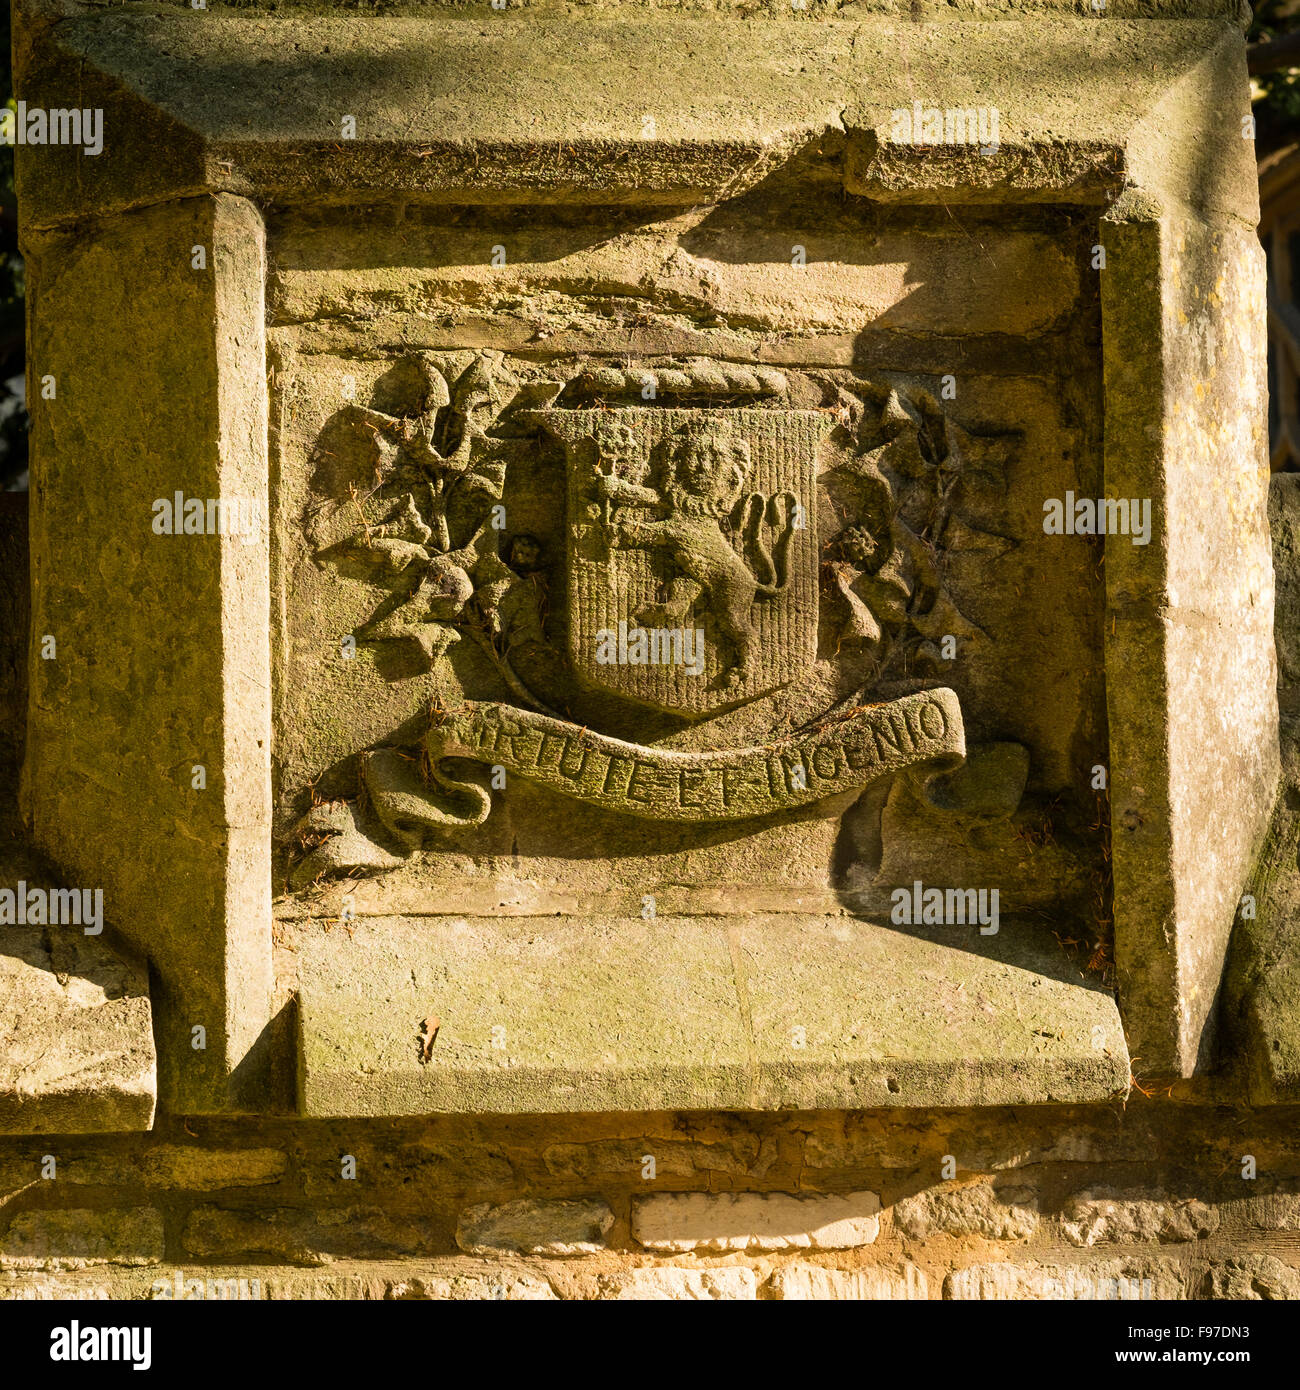 Stone panel mit Wappen mit Löwen auf Schild und Motto VIRTUTE ET INGENIO - durch Tugend und Fähigkeit: geschnitzte Sandstein Motto und Emblem an der Wand der Pfarrkirche in Cirencester, Gloucestershire, England, UK Stockfoto